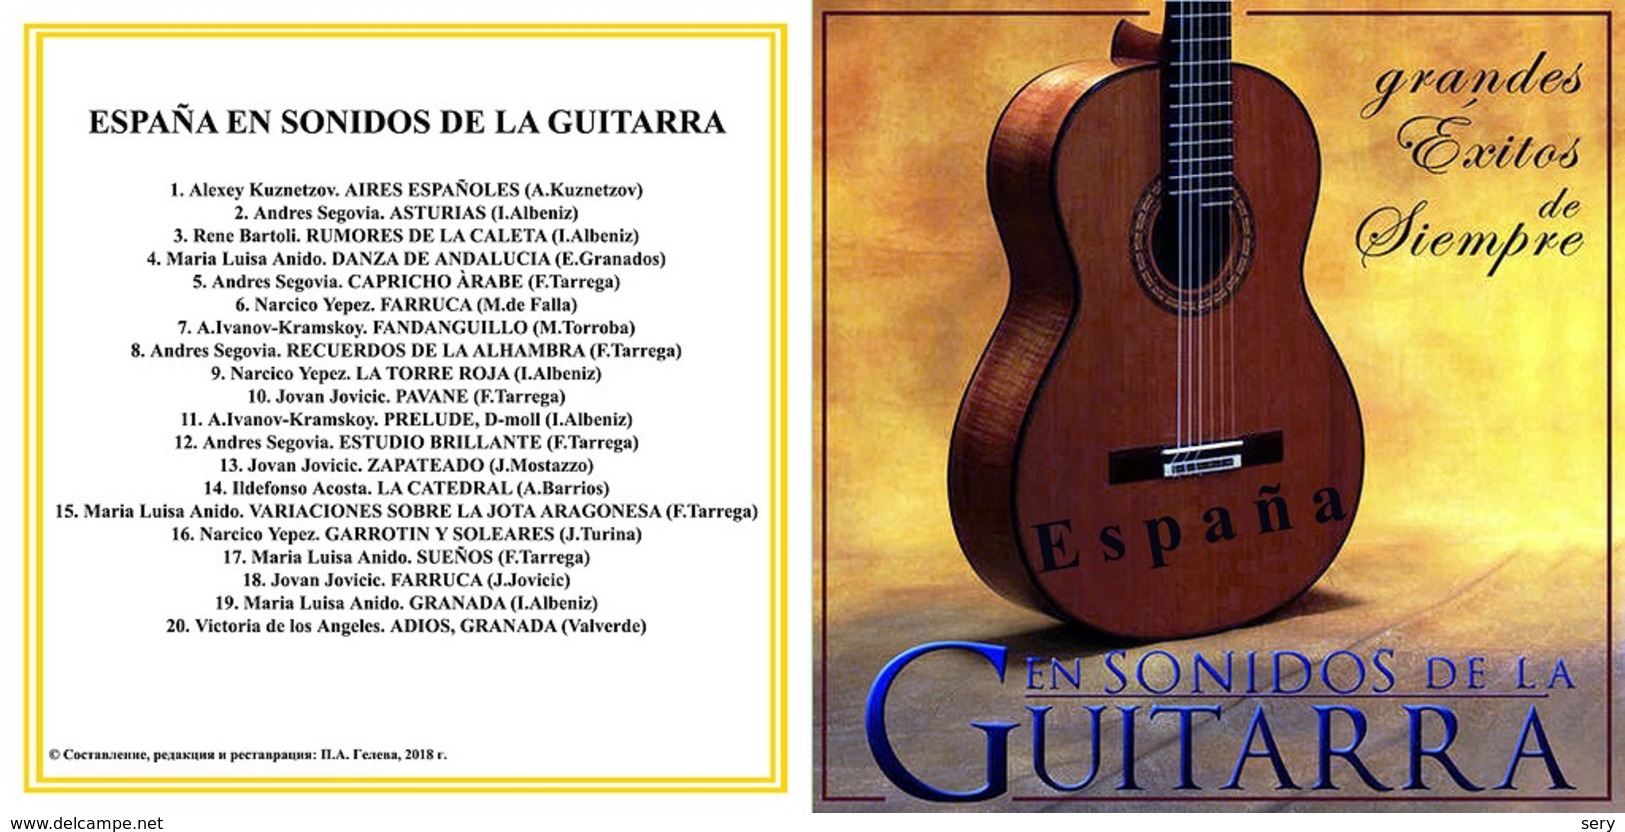 Superlimited Edition CD ESPANA EN SONIDOS DE LA GUITARRA - Editions Limitées